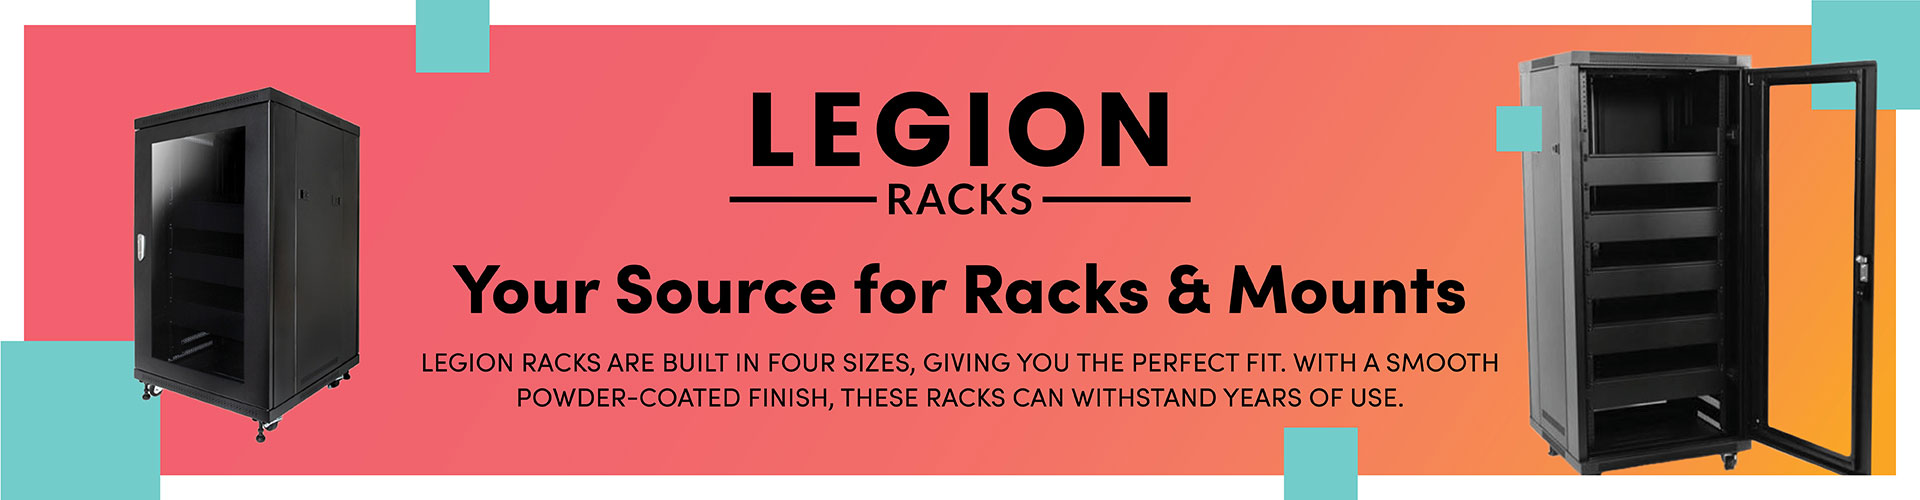 Legion Racks